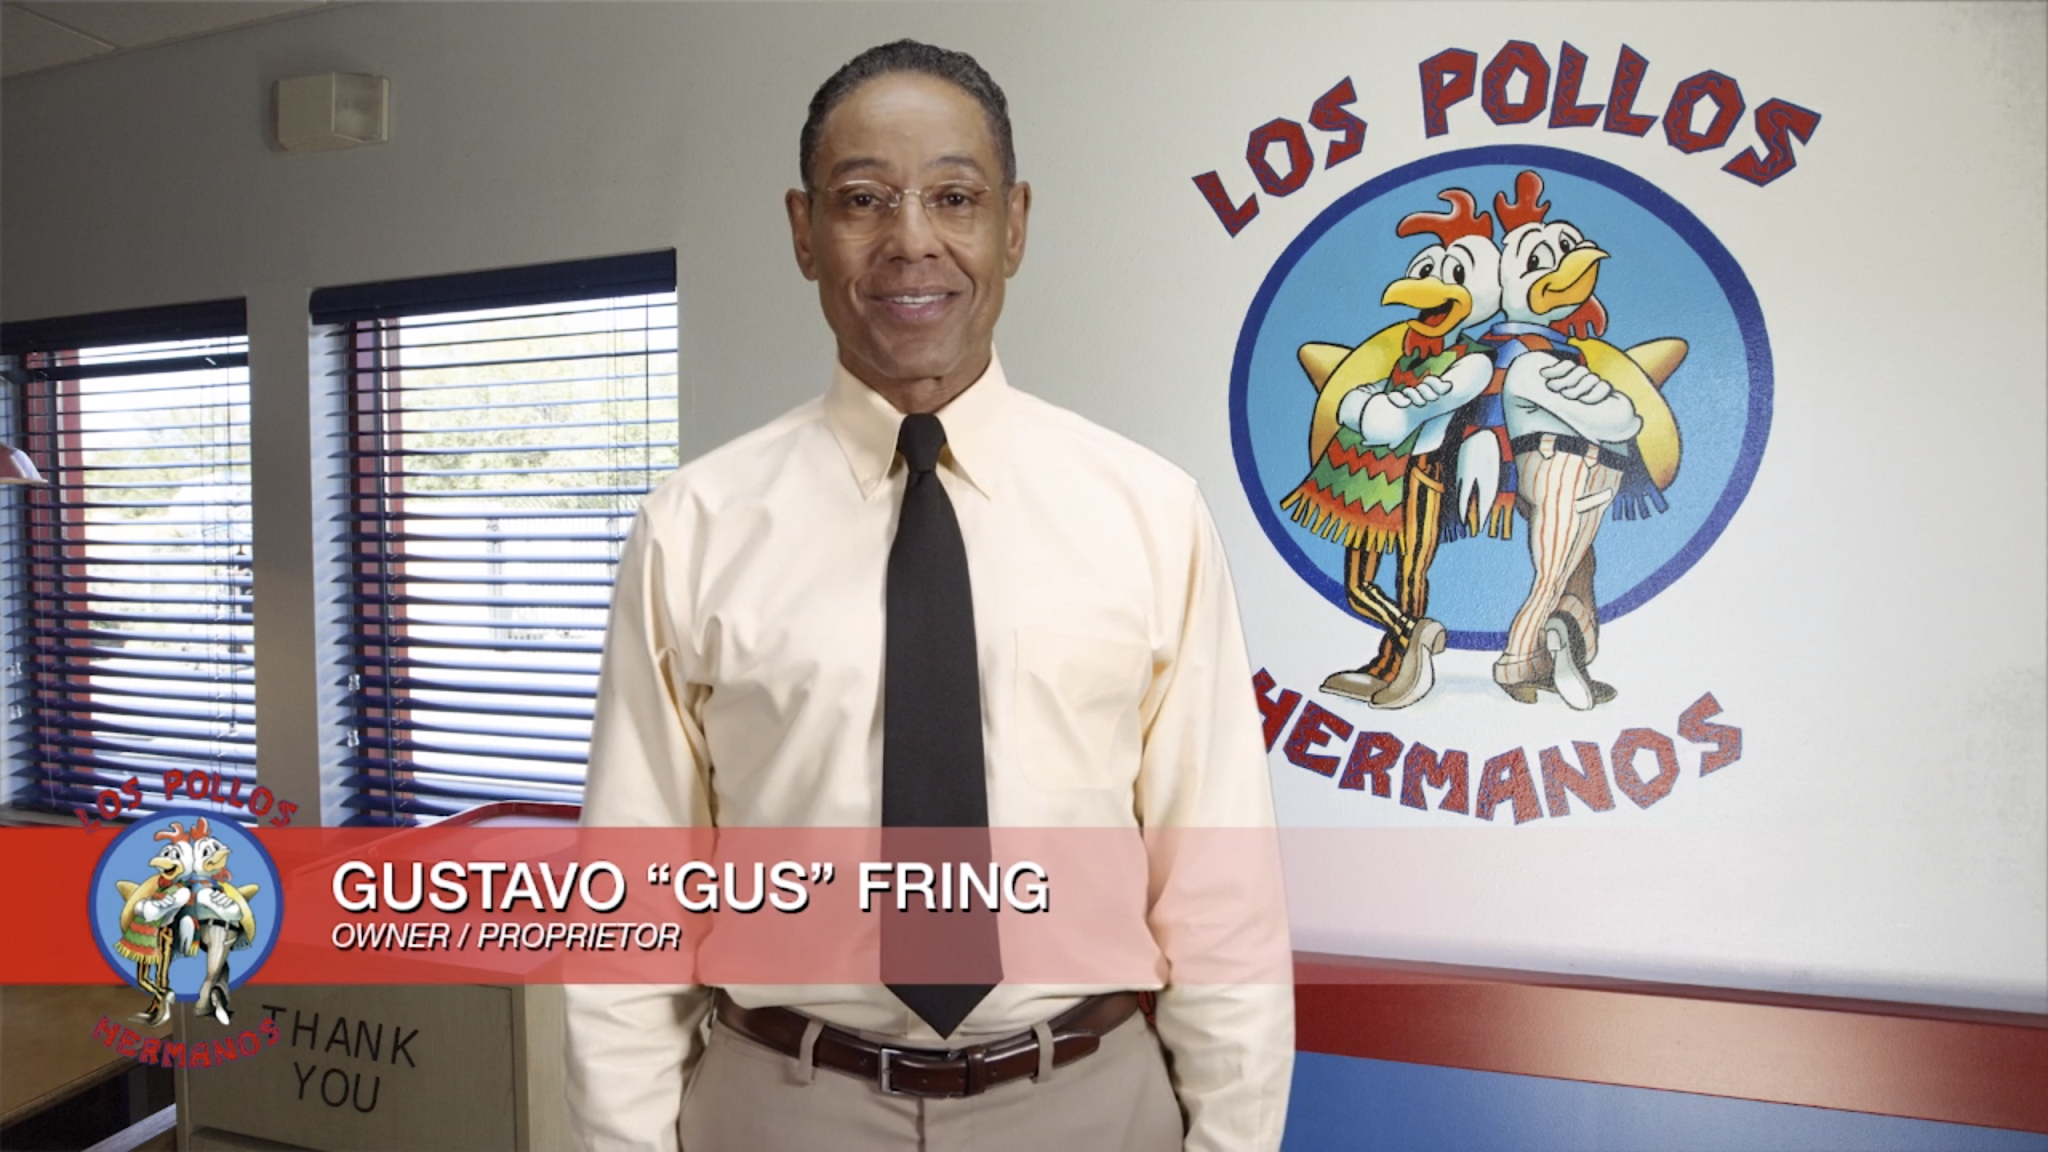 Foto com o fundo em um restaurante escrito “Los Pollos Hermanos” com a logomarca de dois galos mexicanos. Ao centro, o personagem Gus Fring olha para a câmera. Ele é um homem negro, veste camisa branca, oculos, gravata preta e calça bege de alfaiataria.